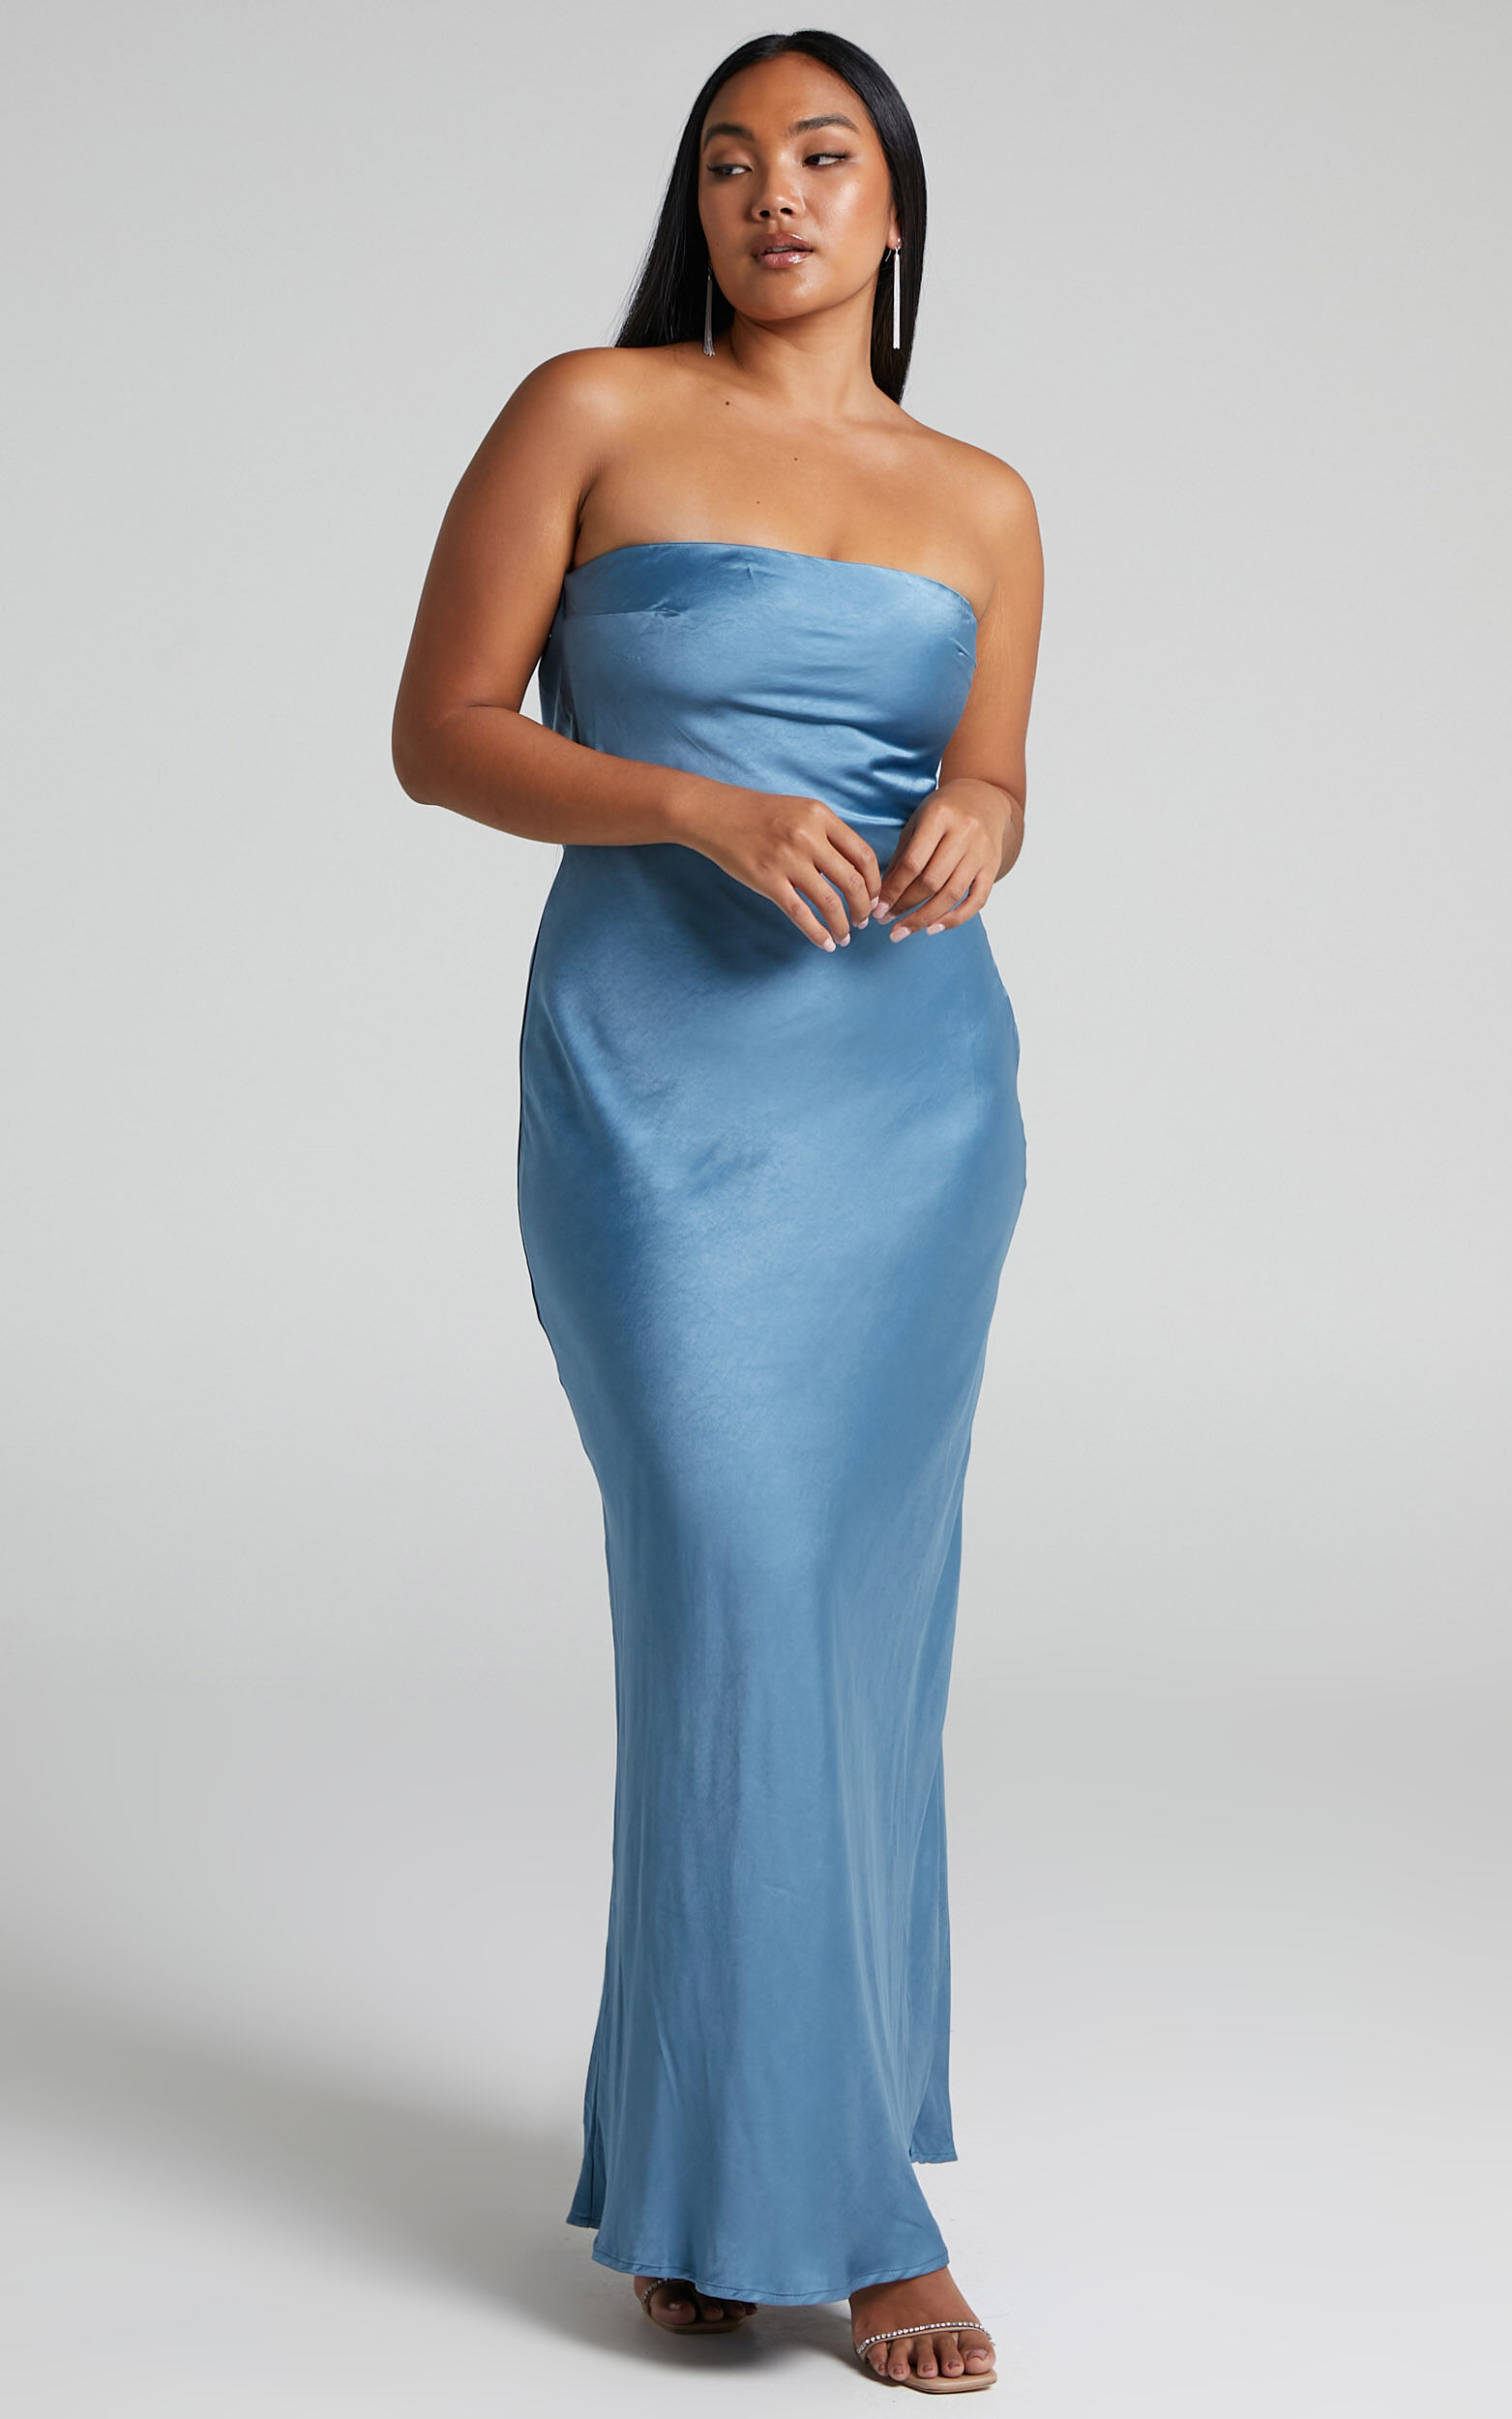 Charlita Maxi Dress - Strapless Cowl Back Satin Dress in Steel Blue